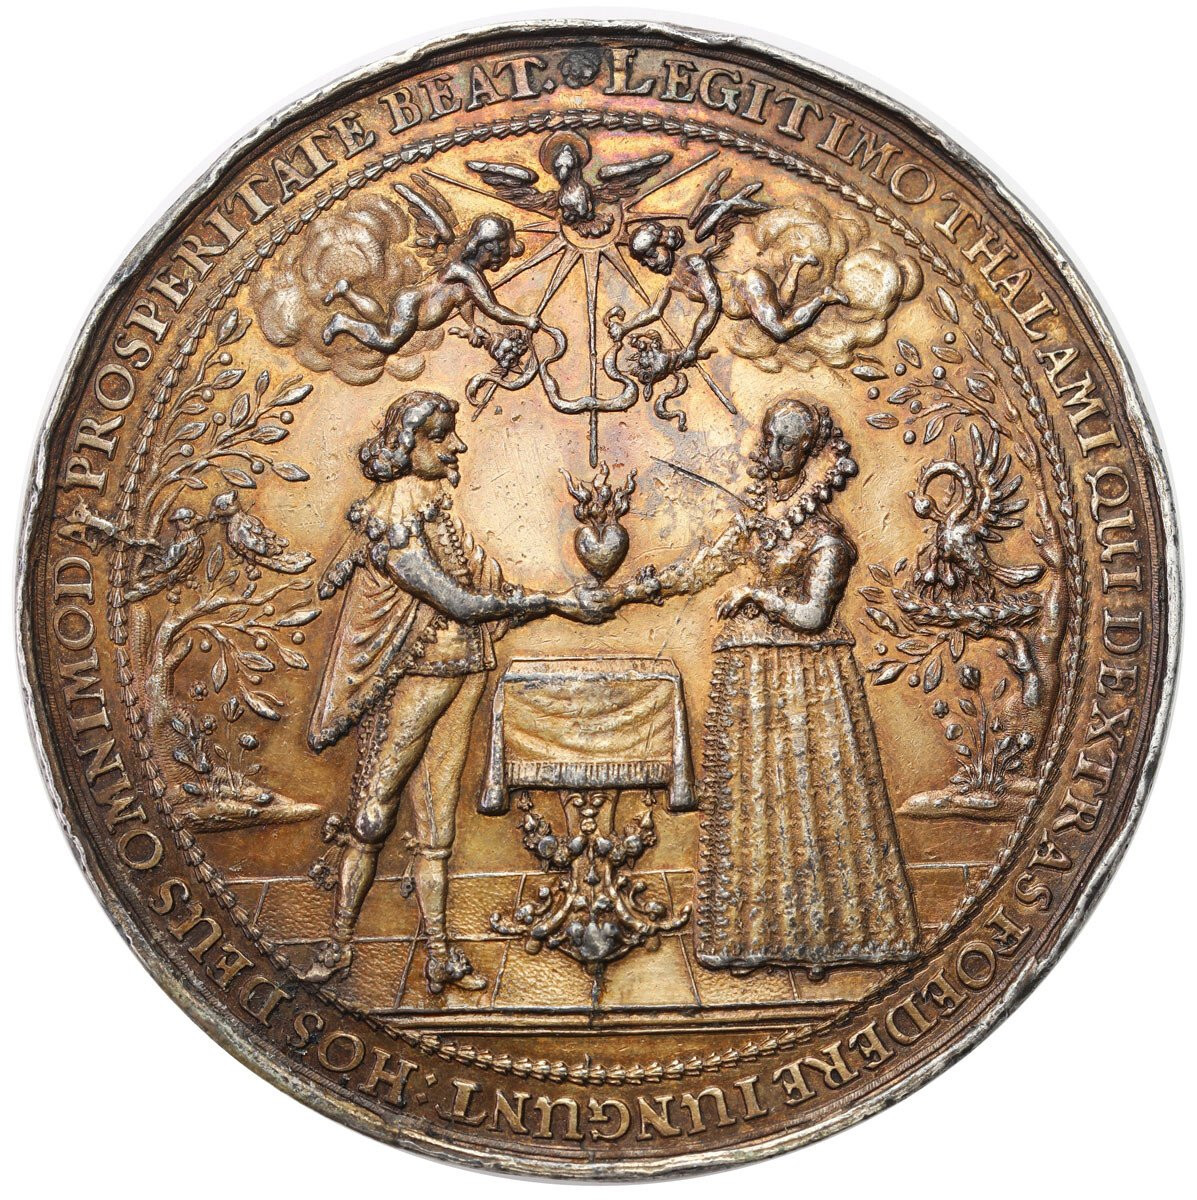 Władysław IV Waza. Medal zaślubinowy, Jan Höhn, Gdańsk, srebro 